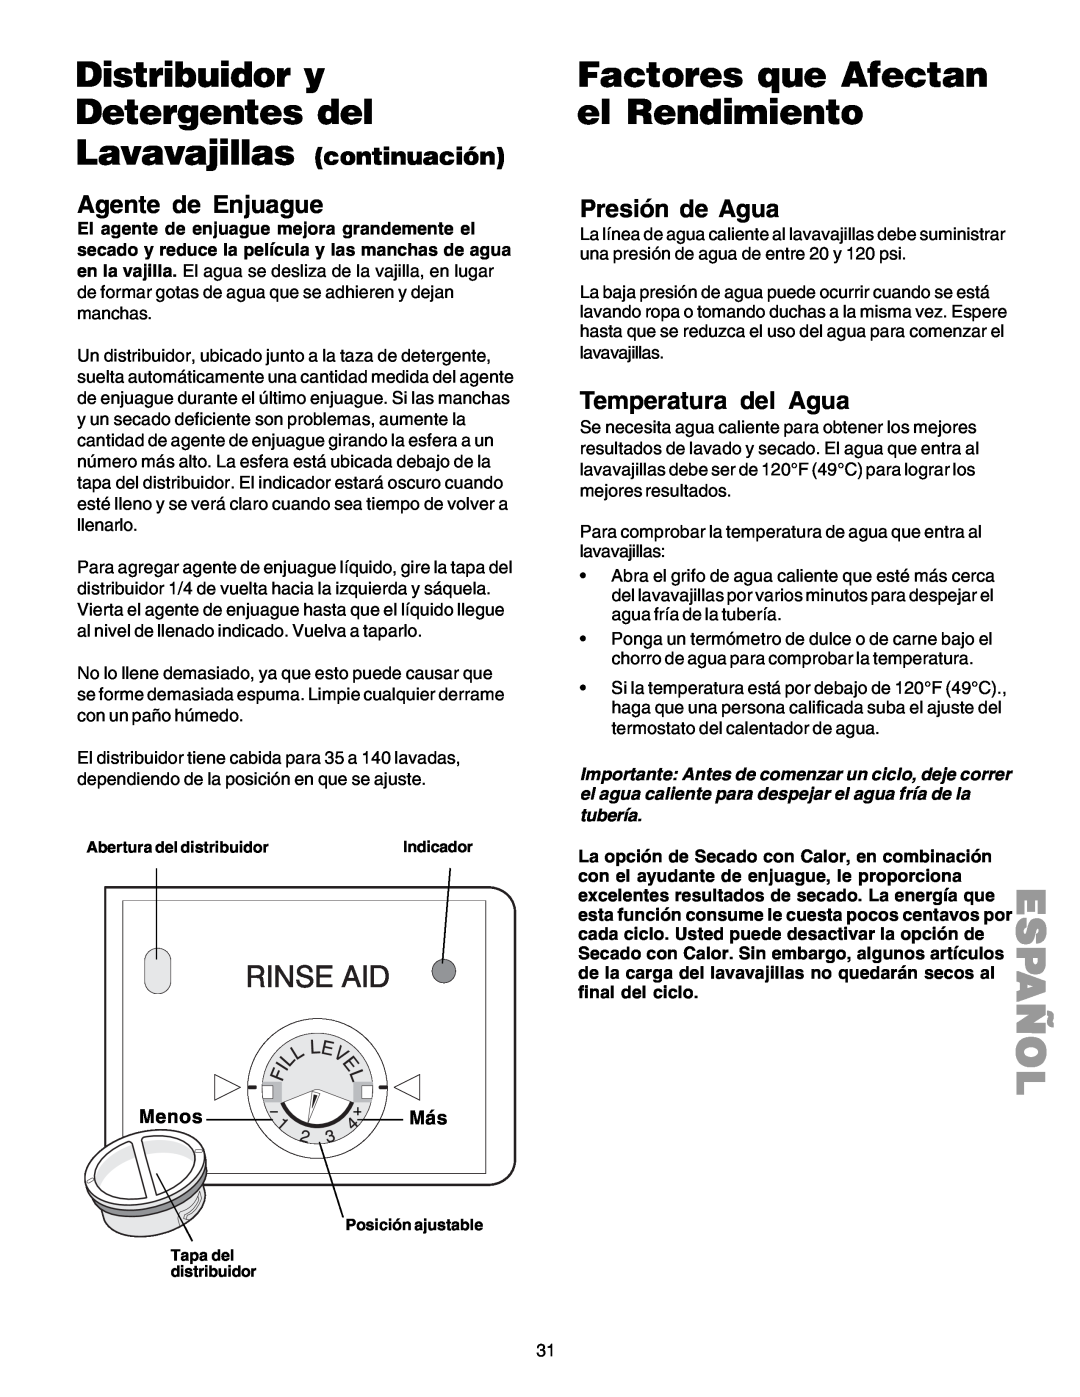 Kenmore 587.1523 manual Distribuidor y Detergentes del, Factores que Afectan el Rendimiento, Presión de Agua, Menos Más 